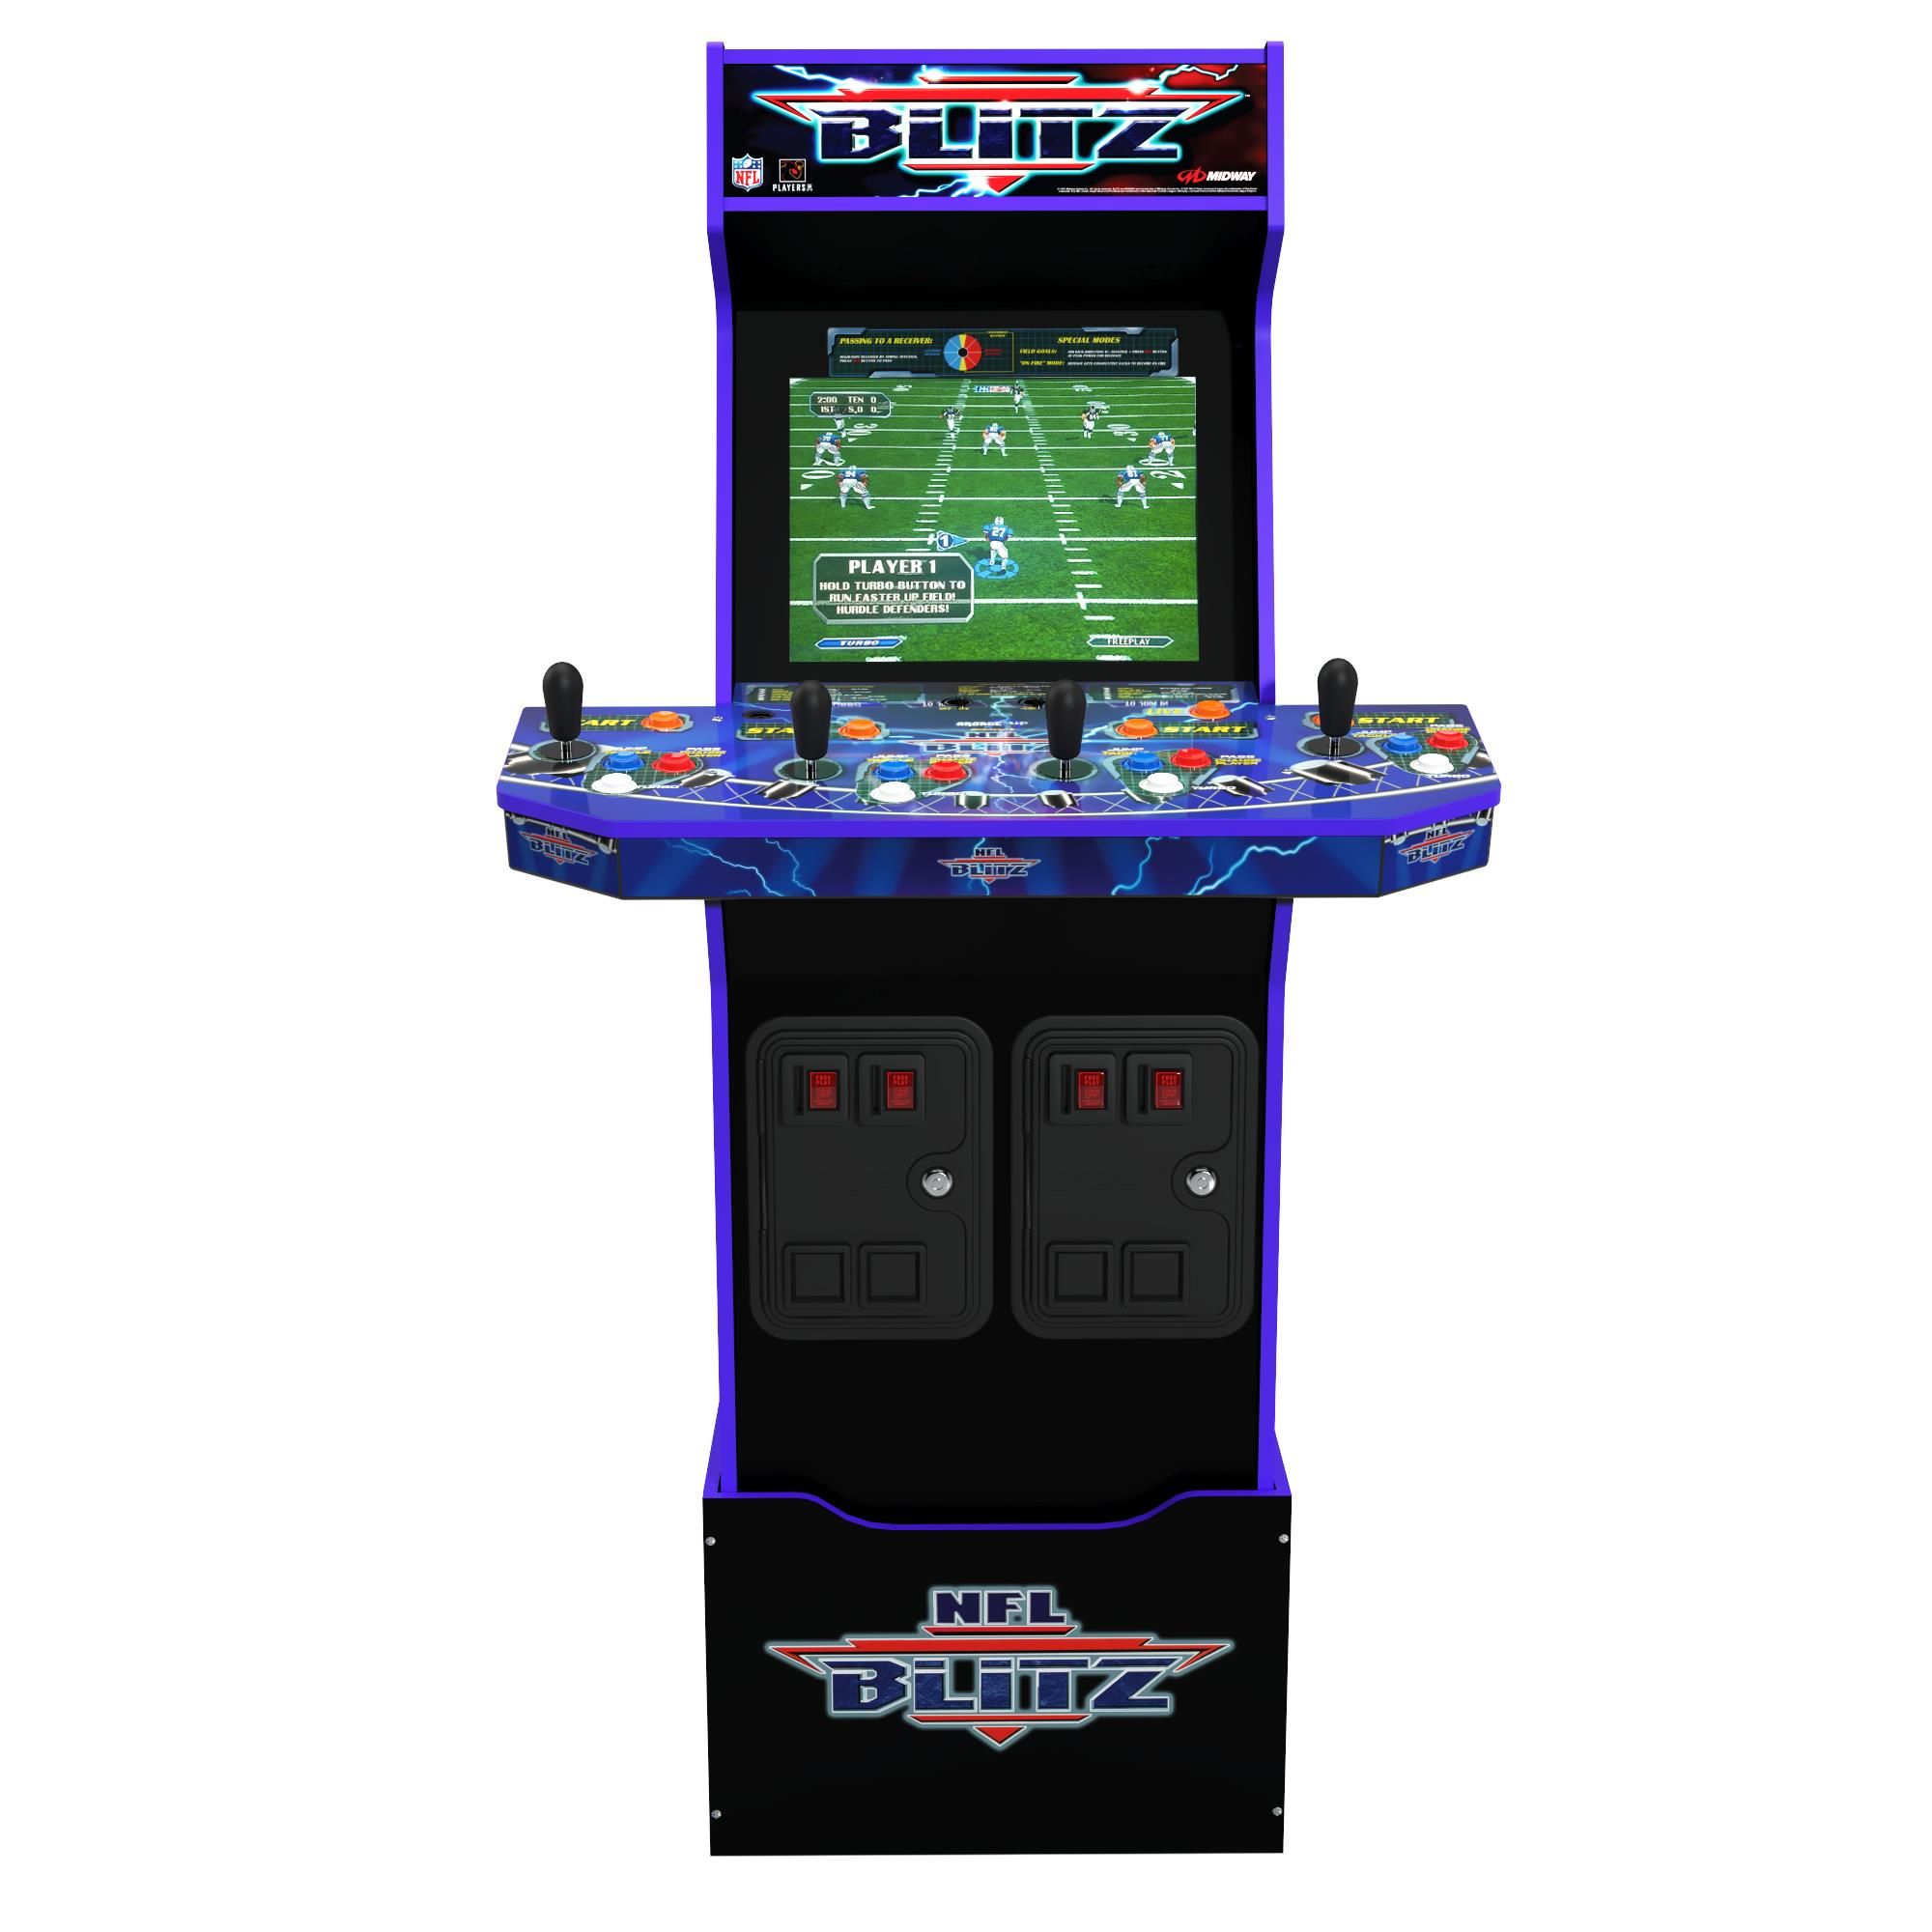 Arcade1up Console Videogioco Blitz